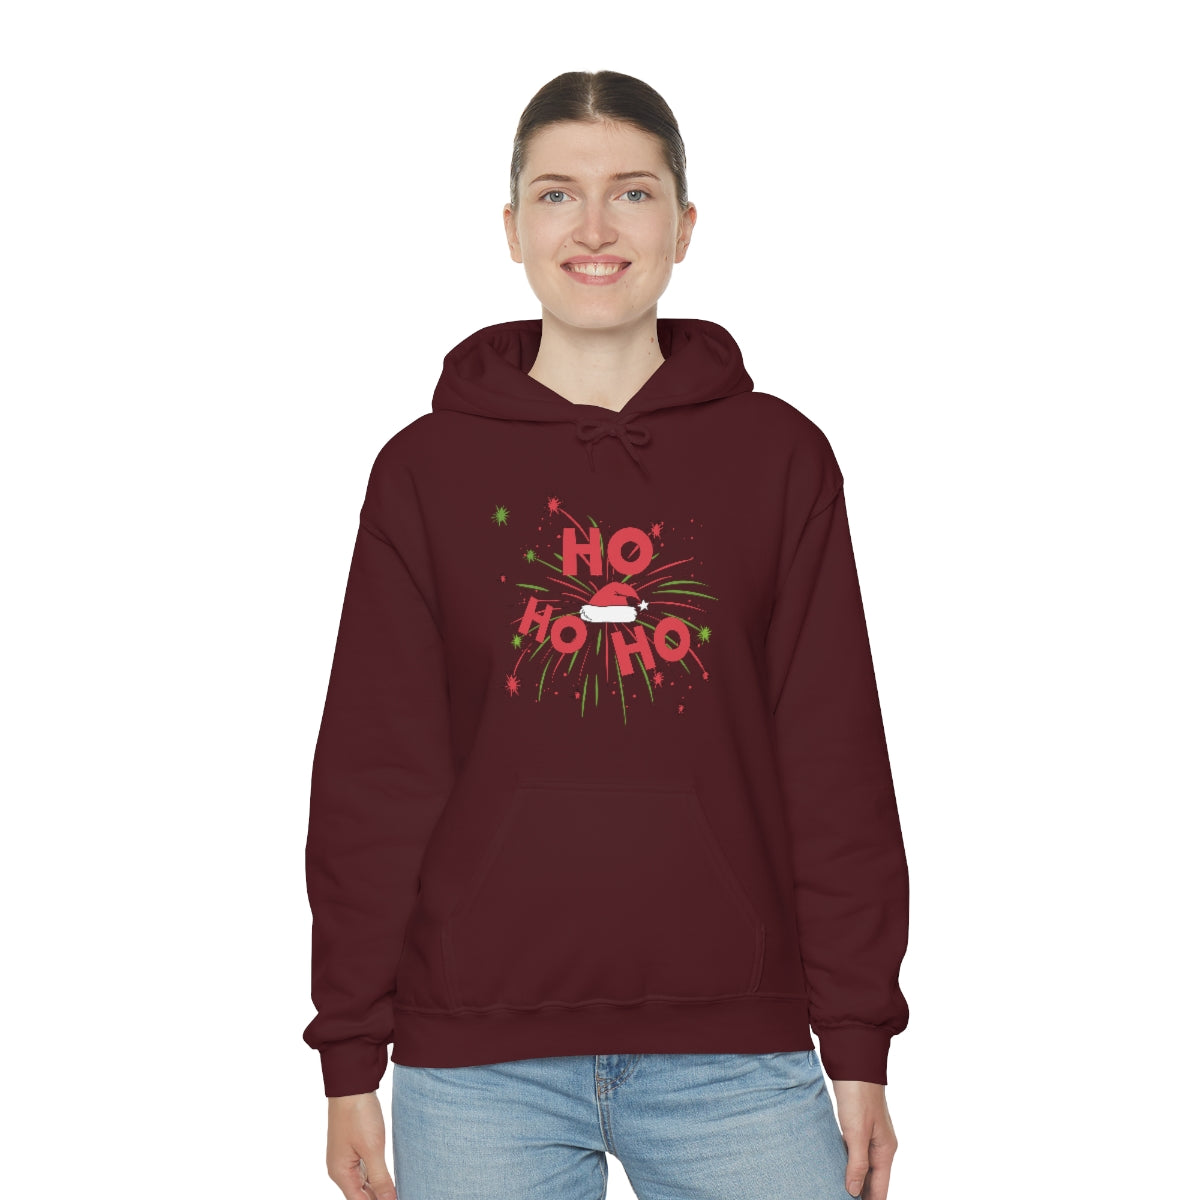 Merry Christmas Hoodie Unisex Custom Hoodie , Hooded Sweatshirt , HO HO HO Printify